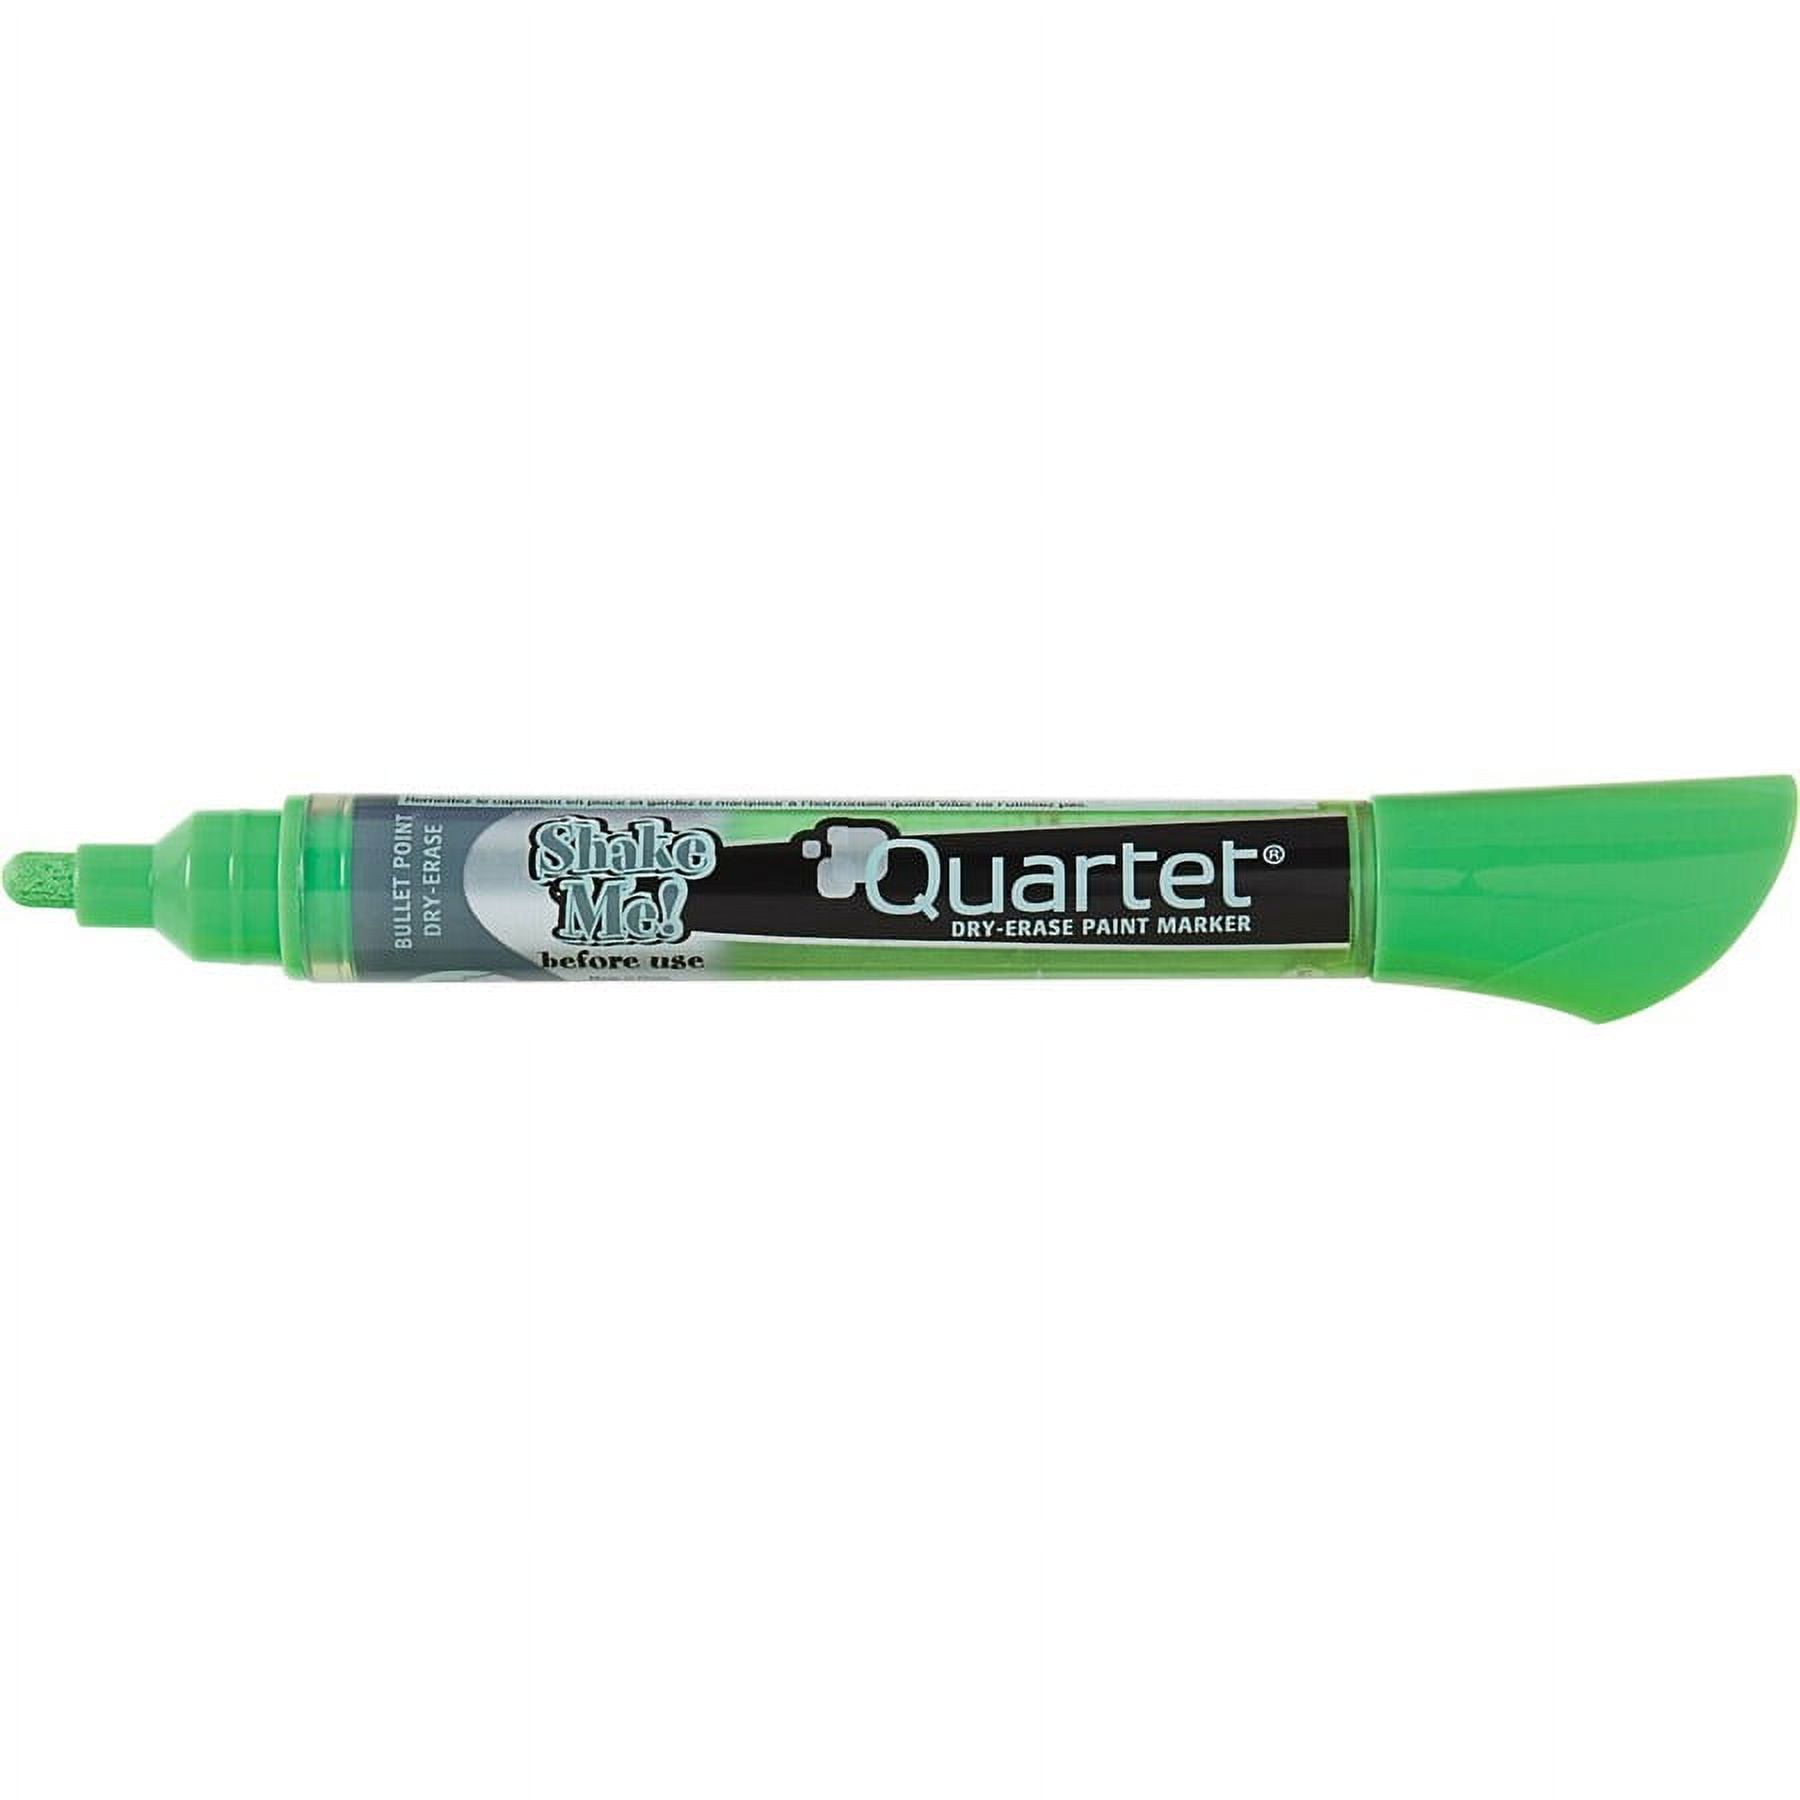 Quartet Dry Erase Marker Set,Bullet,PK4 5001-1MA, 1 - Fry's Food